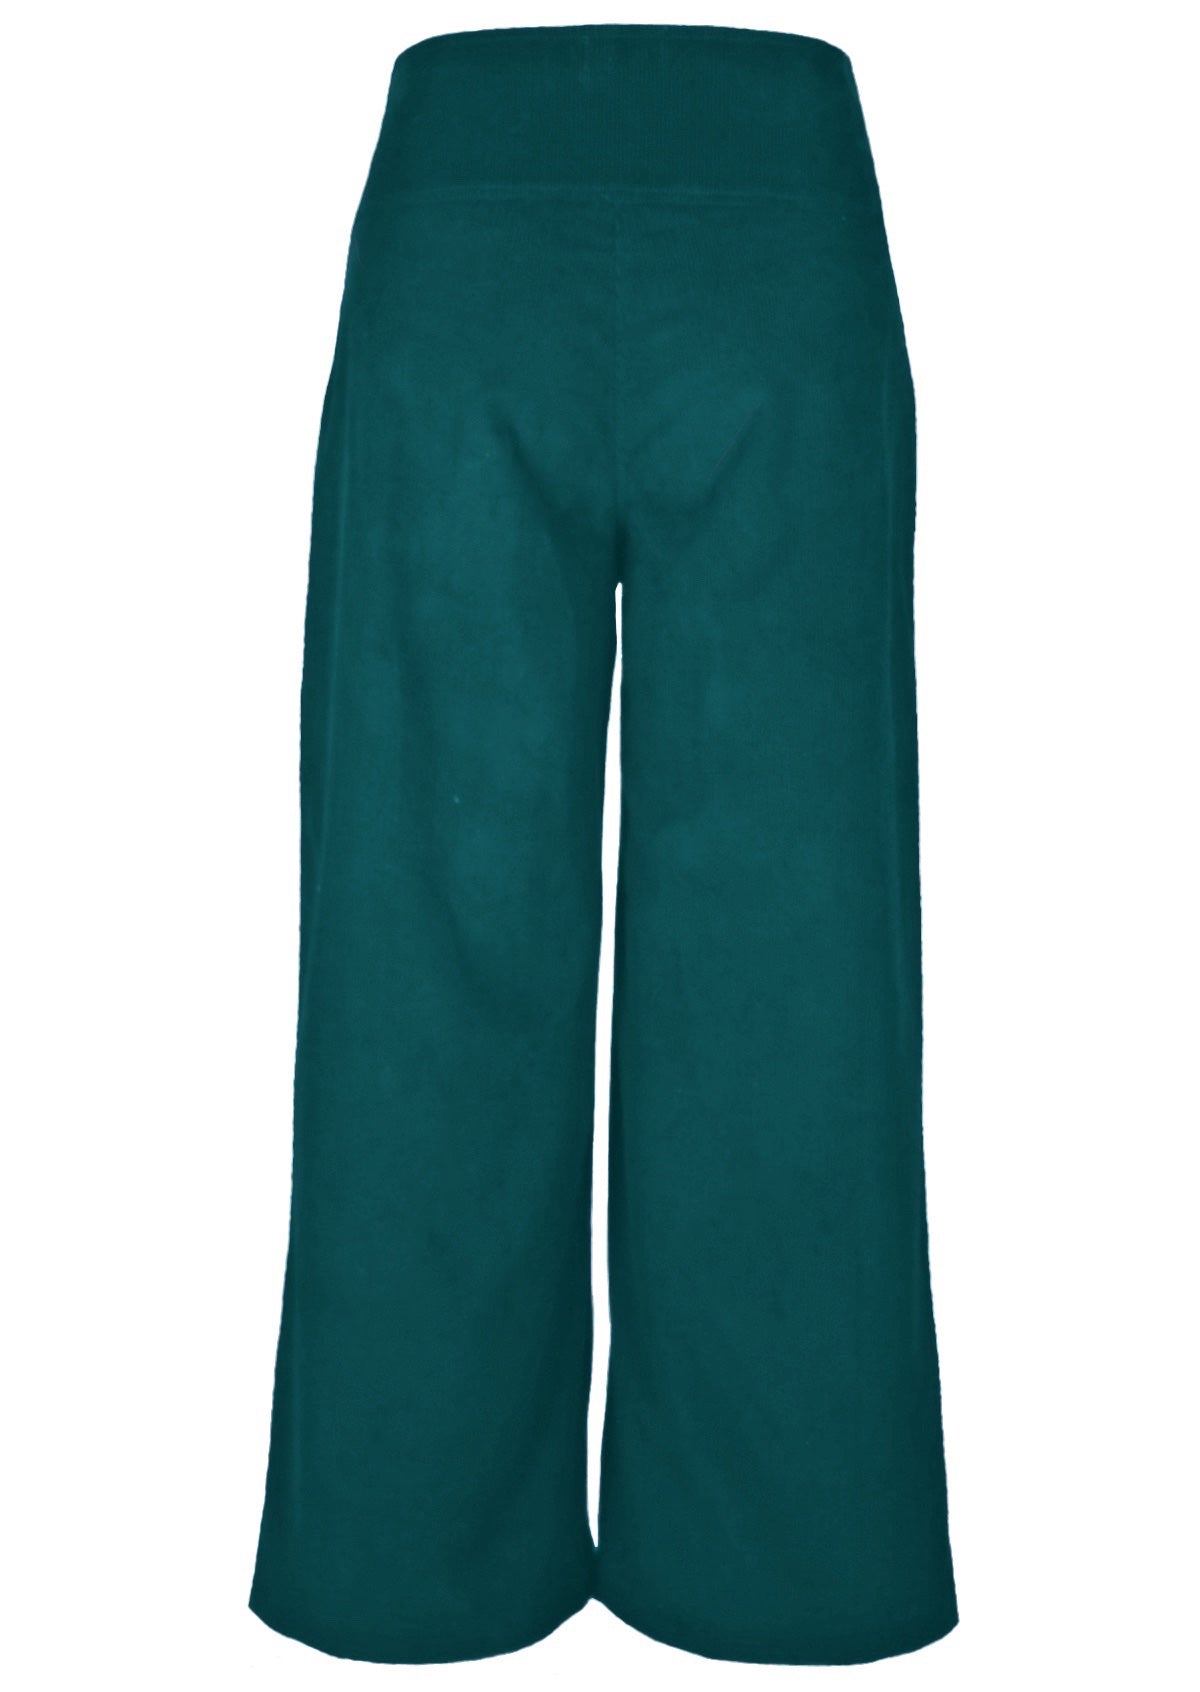 Deep teal 100% cotton corduroy pants have convenient pockets!